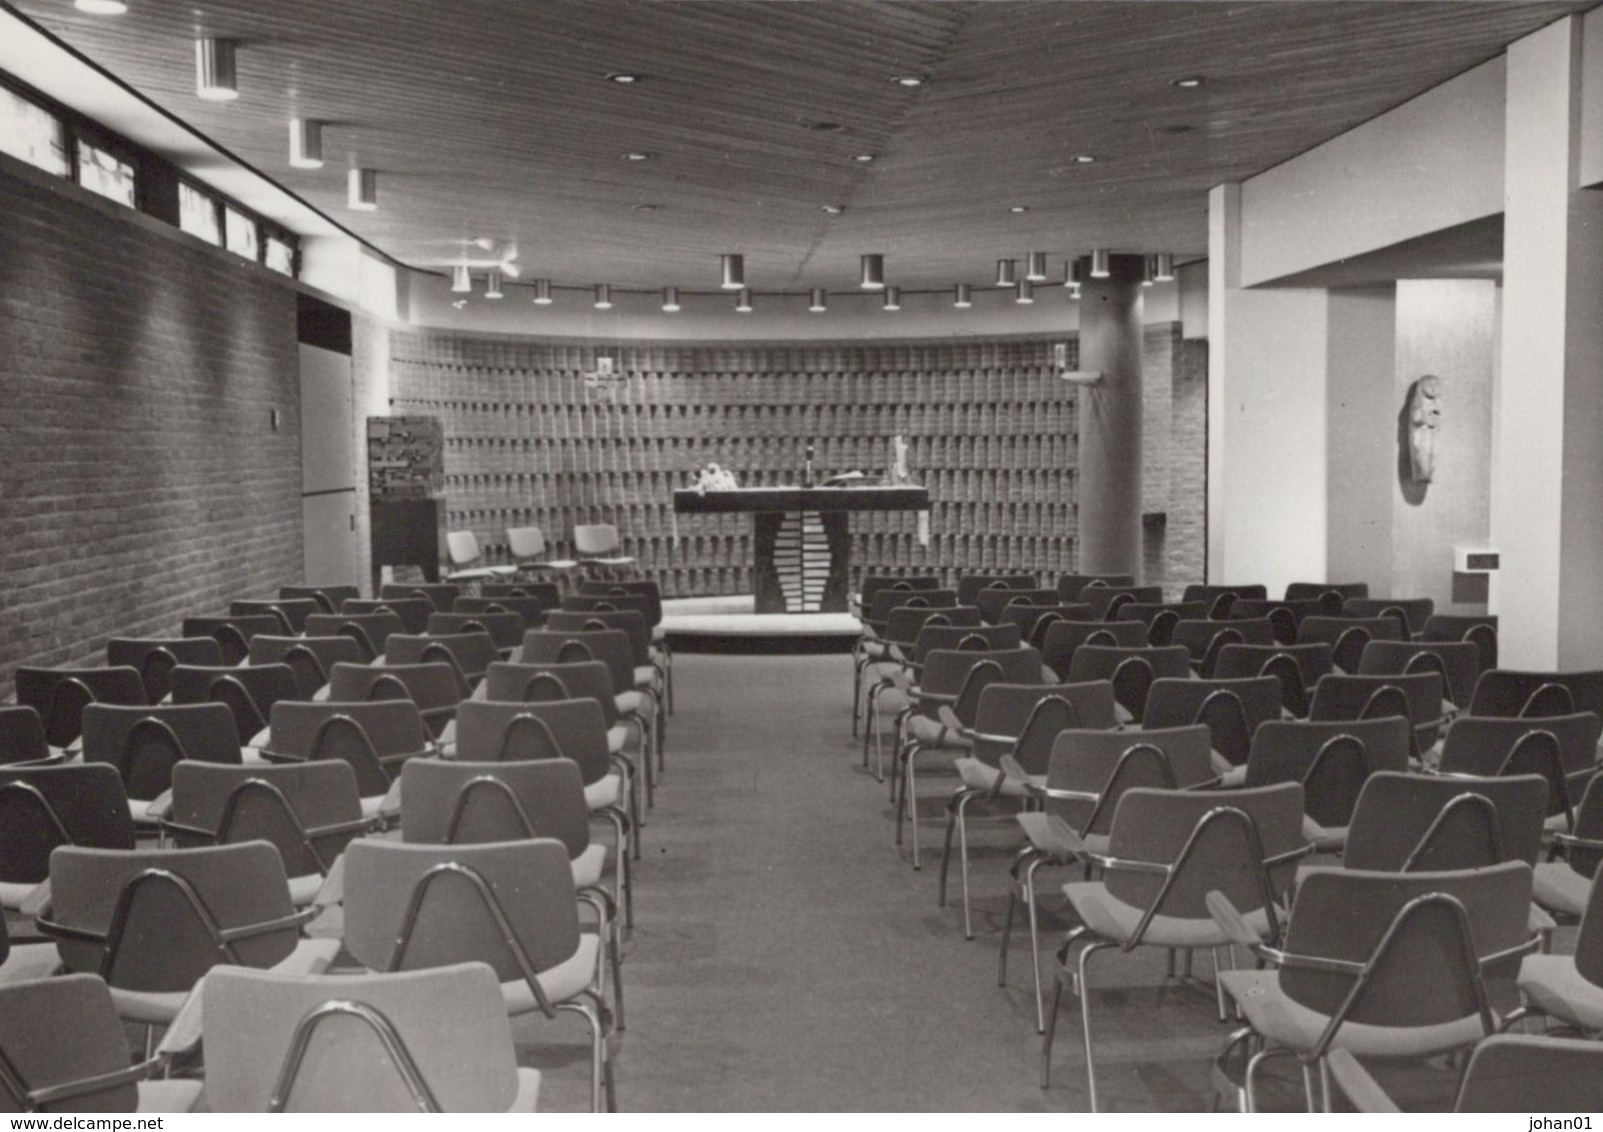 MAASTRICHT - 1976 - 4 ansichten bejaardencentrum Jekerdal